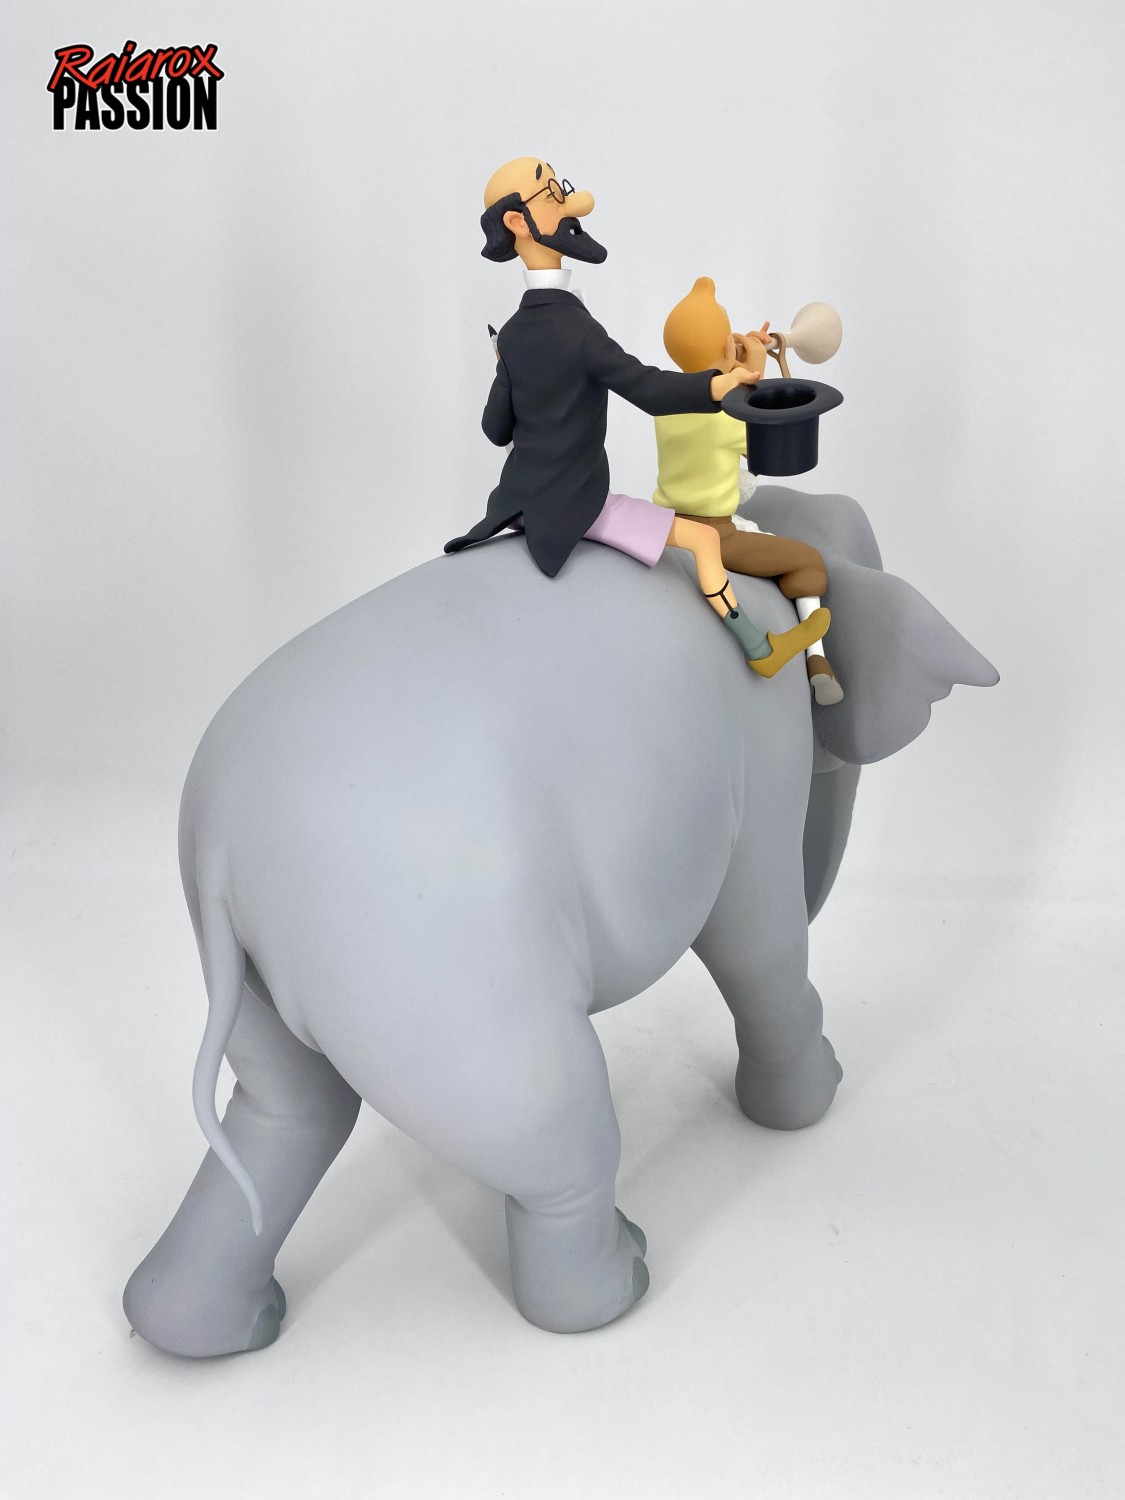 Tintin et Philémon sur un éléphant - statuette résine 37 cm